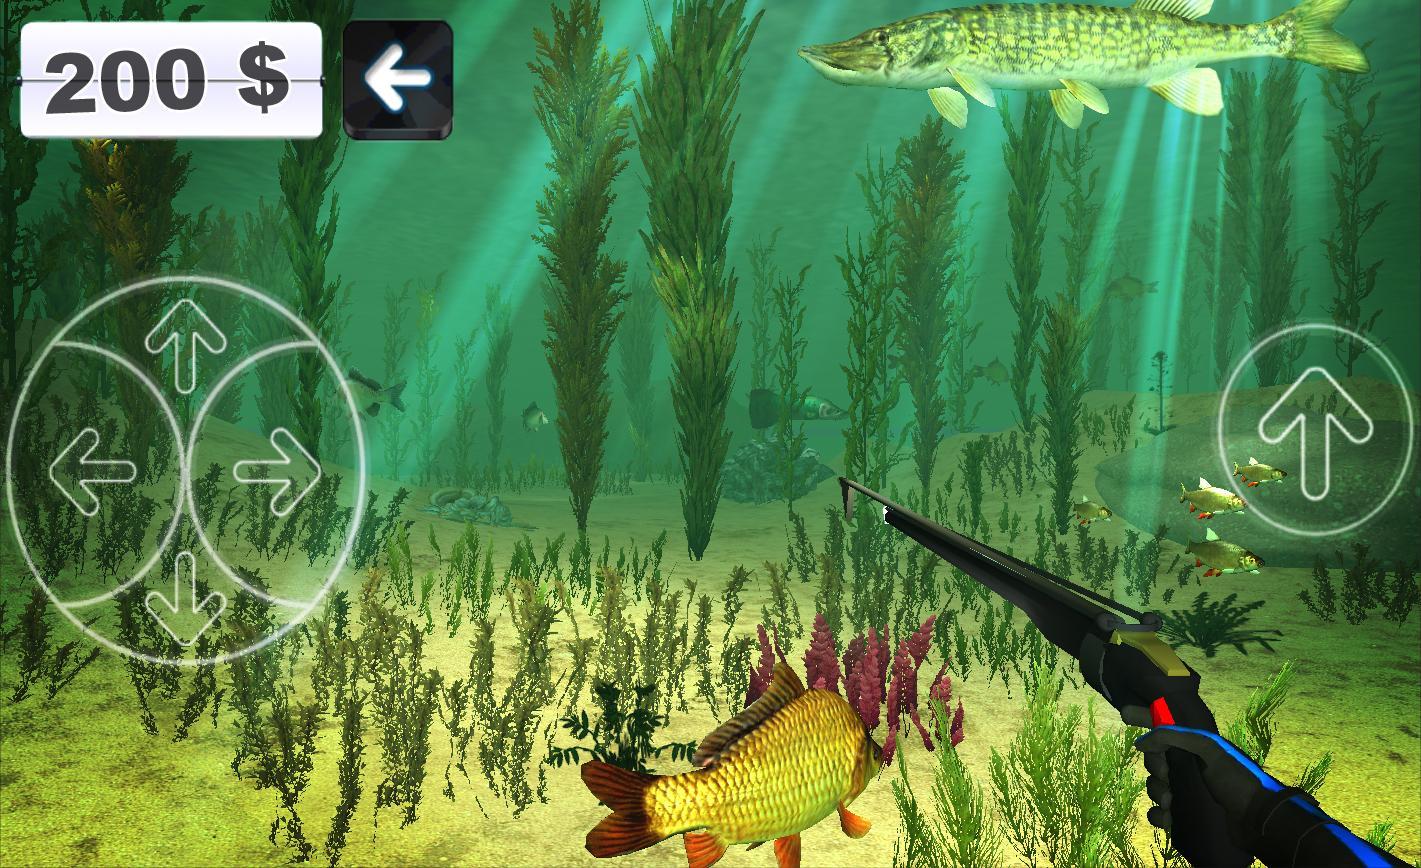 Spearfishing. Marine life. screenshot game